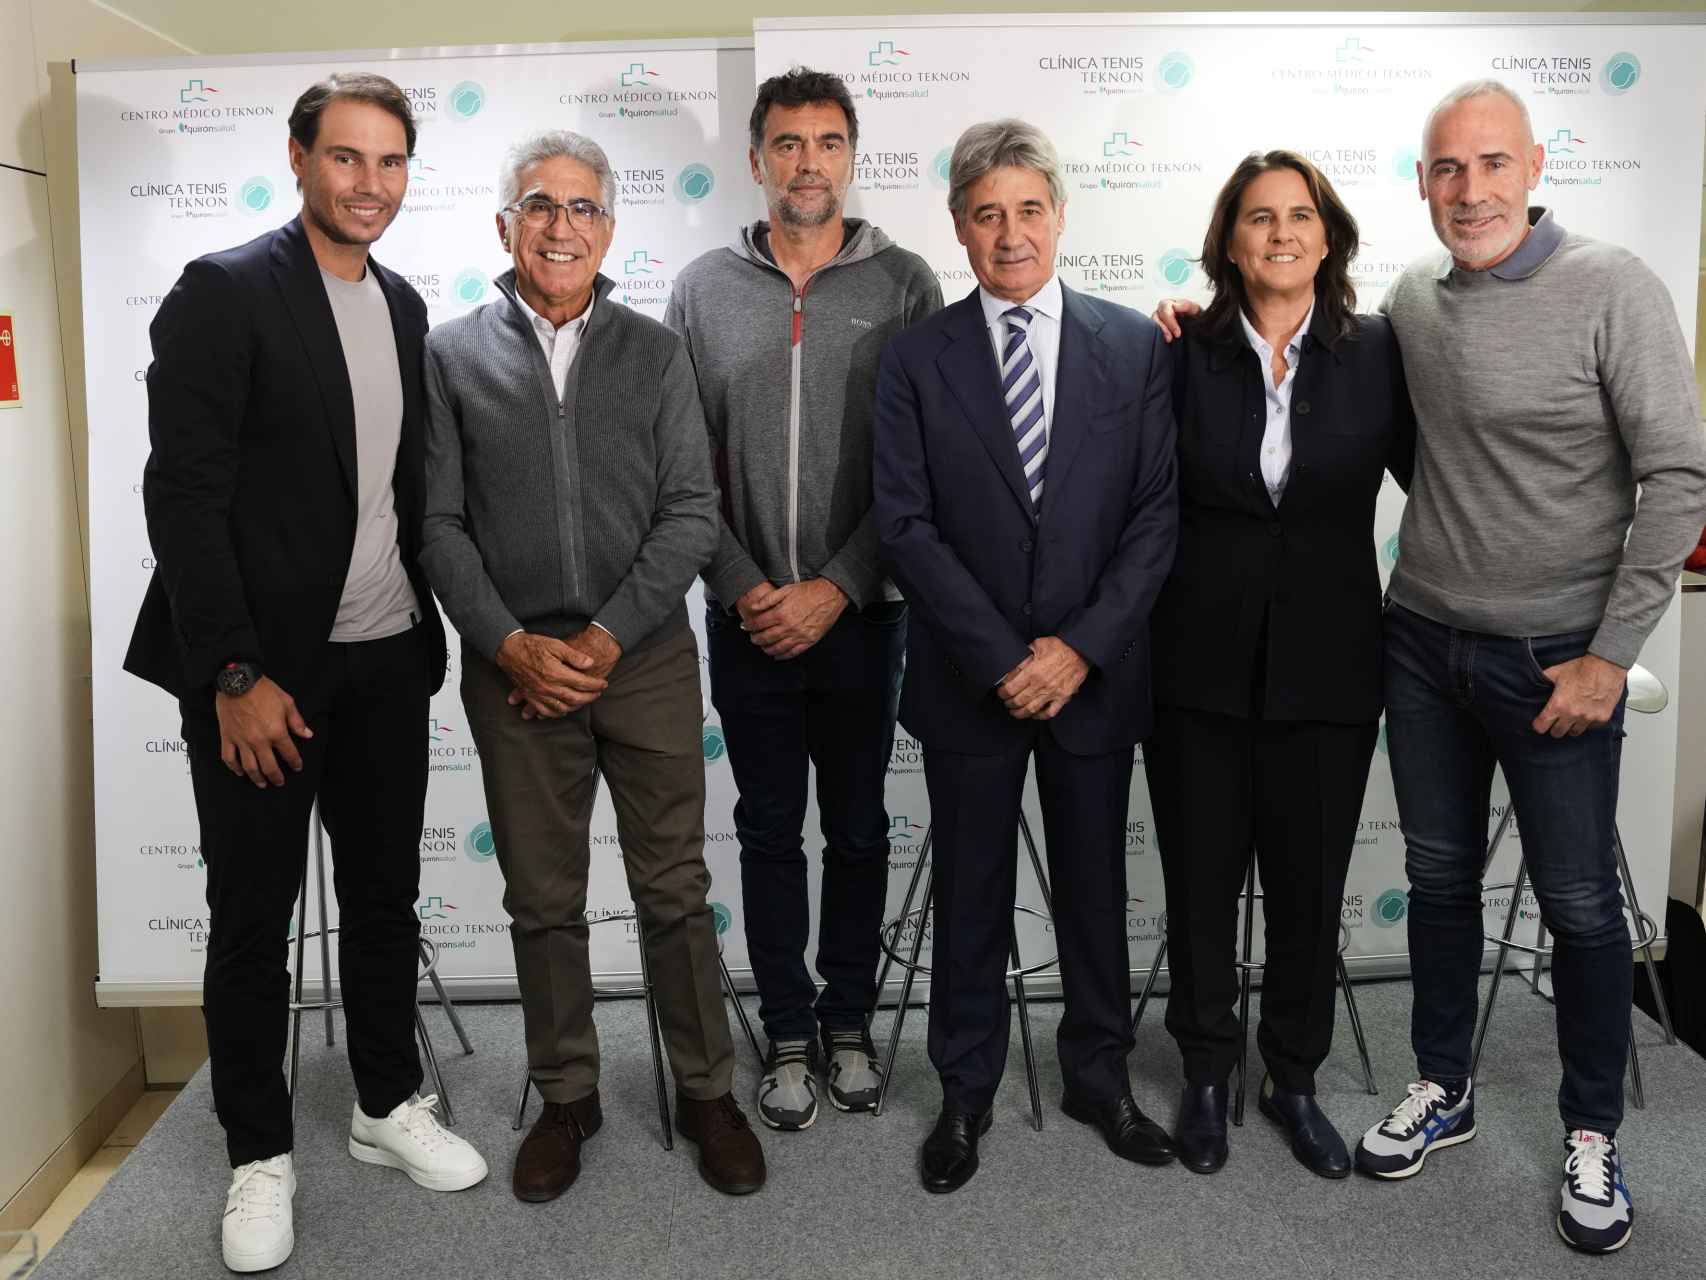 De izda a dcha. Rafa Nadal, Manolo Orantes, Sergi Bruguera, Dr. Ángel Ruiz Cotorro, Conchita Martínez y  Álex Corretja